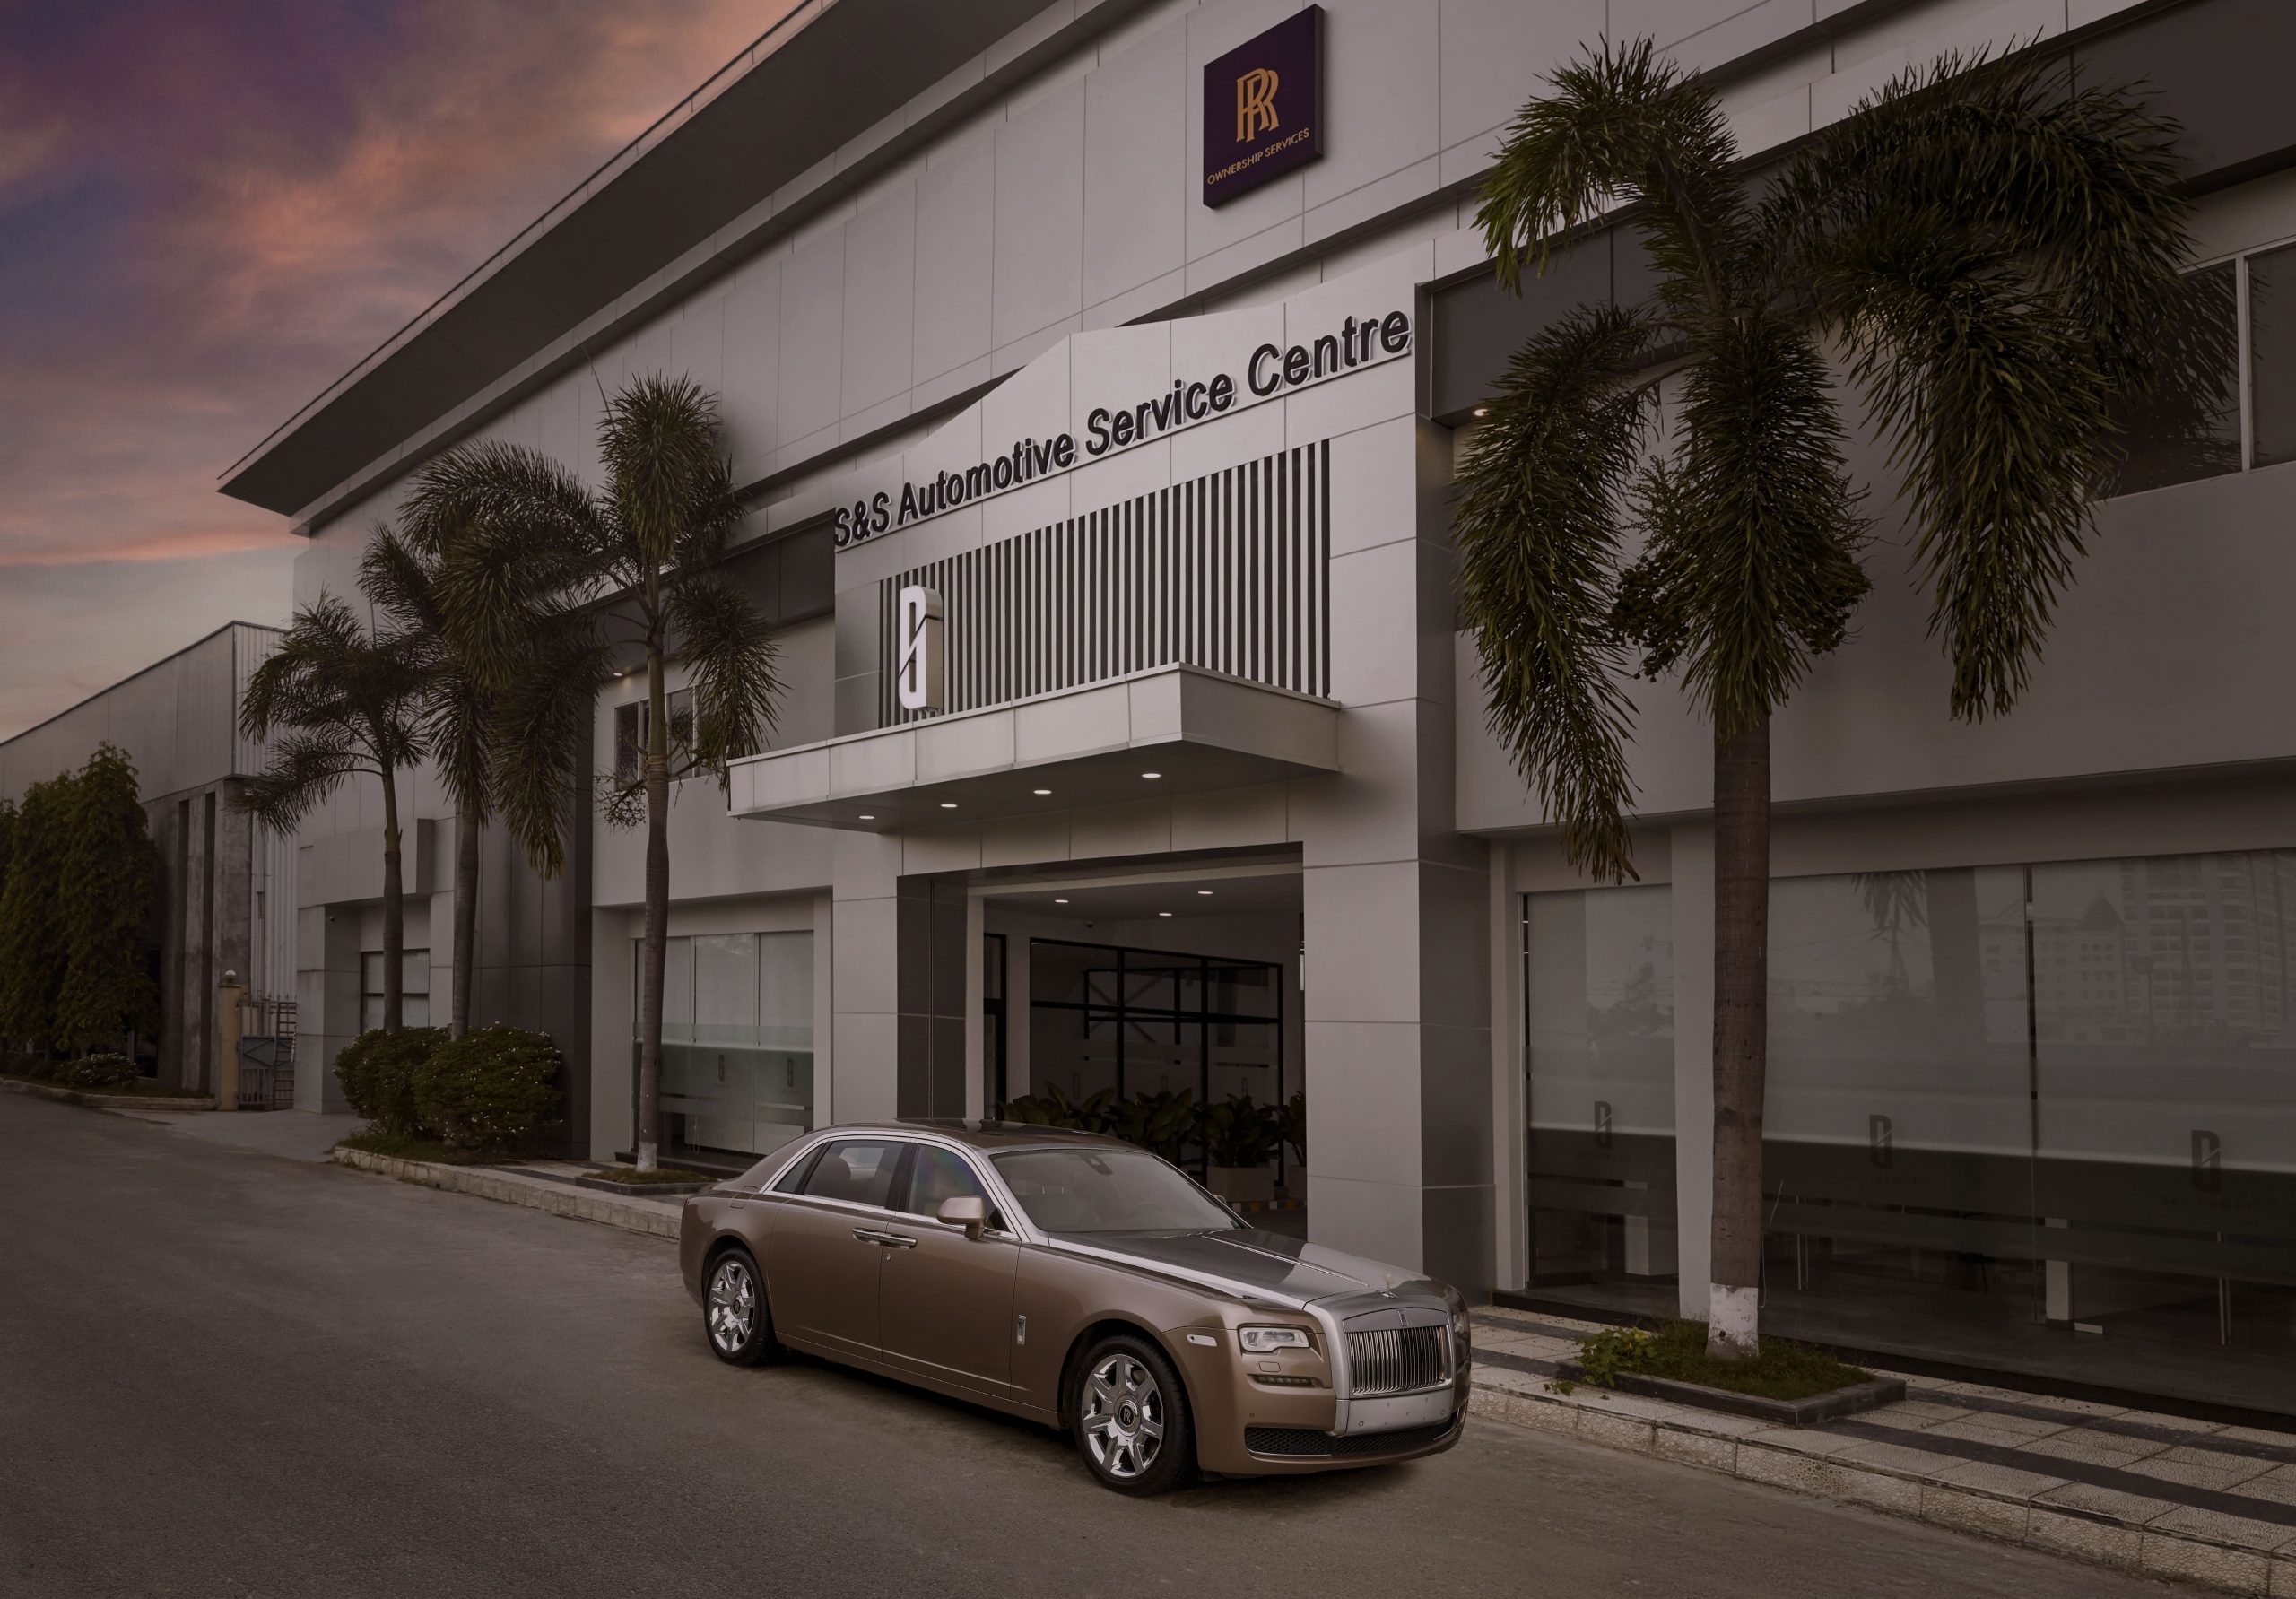 việc hoạt động hai xưởng dịch vụ tại Hà Nội và TP.HCM nhằm mang trải nghiệm hoàn hảo hơn tới với các chủ nhân sở hữu Rolls-Royce trên khắp lãnh thổ Việt Nam.